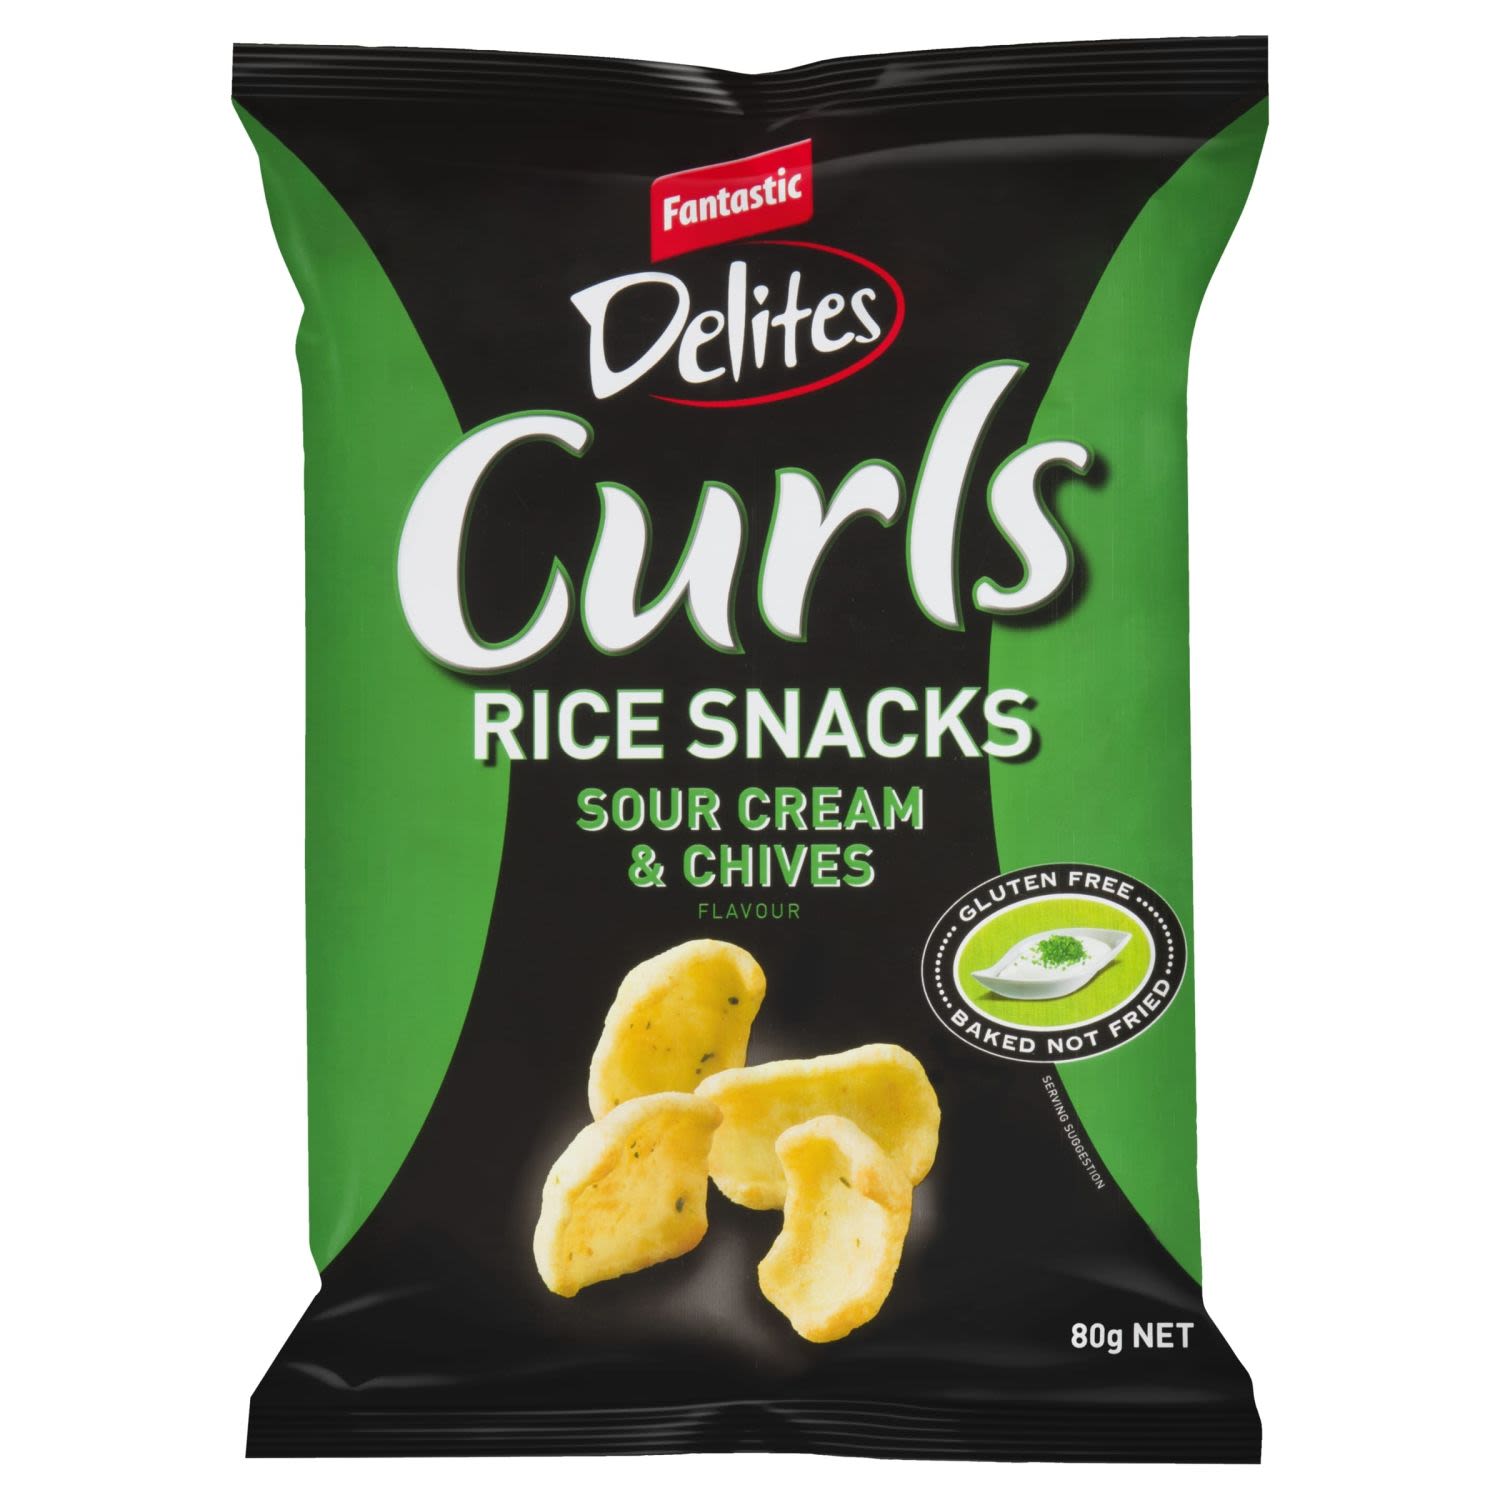 Fantastic Delites Curls Rice Snacks Sour Cream & Chives, 80 Gram